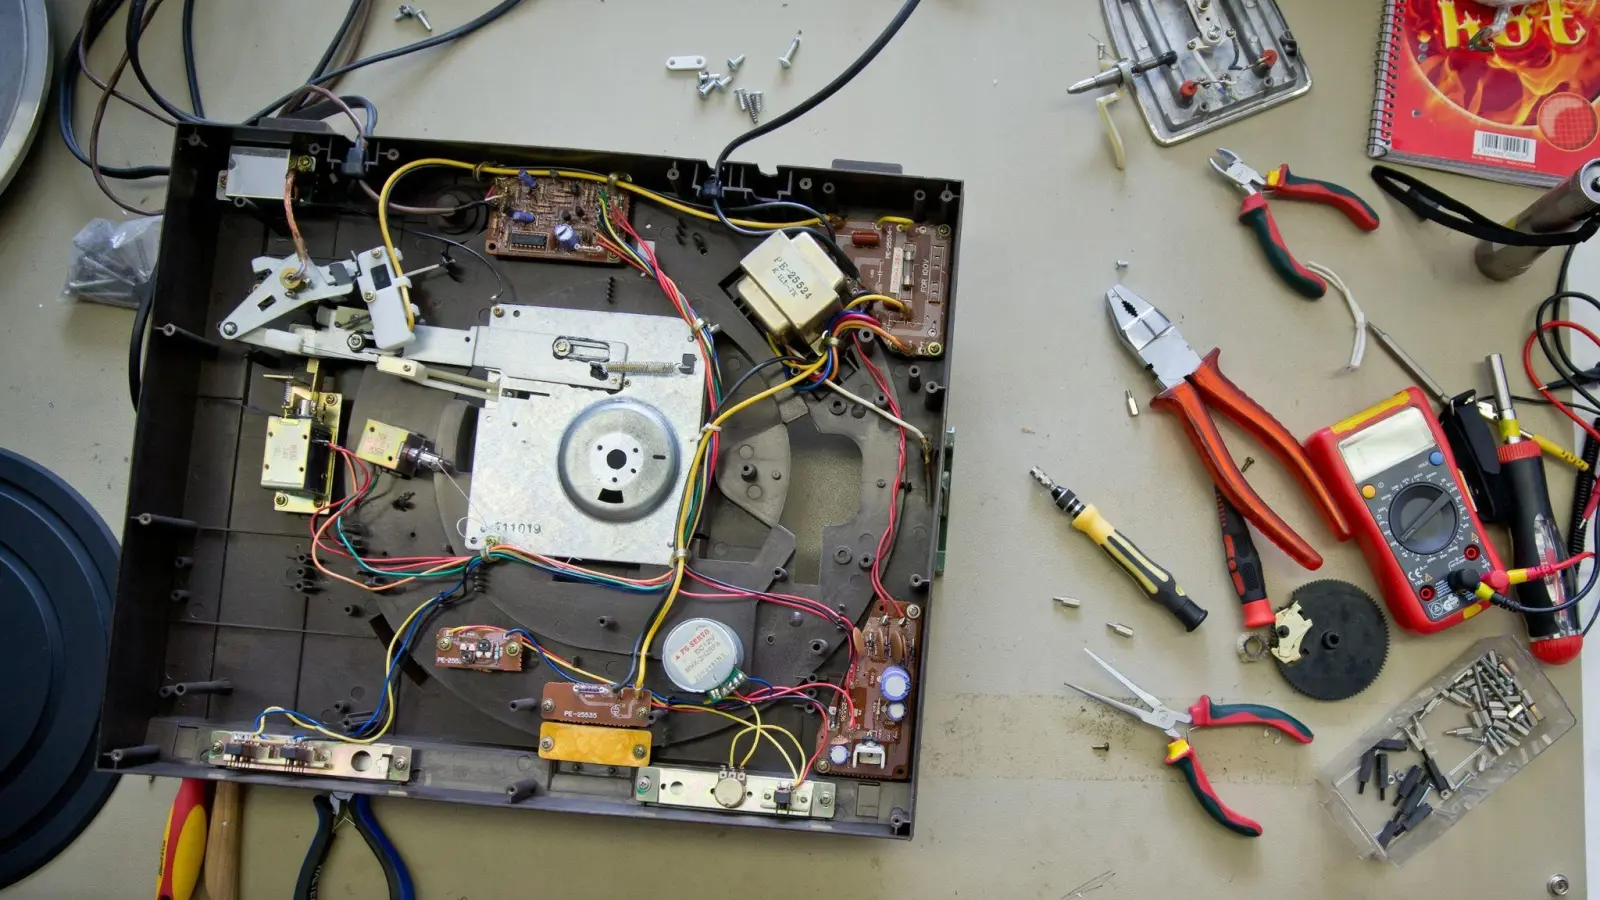 Öffnen und schrauben: Elektrogeräte lassen sich oft reparieren - die nachhaltigere Alternative zum Neukauf. (Foto: Daniel Karmann/dpa/dpa-tmn)